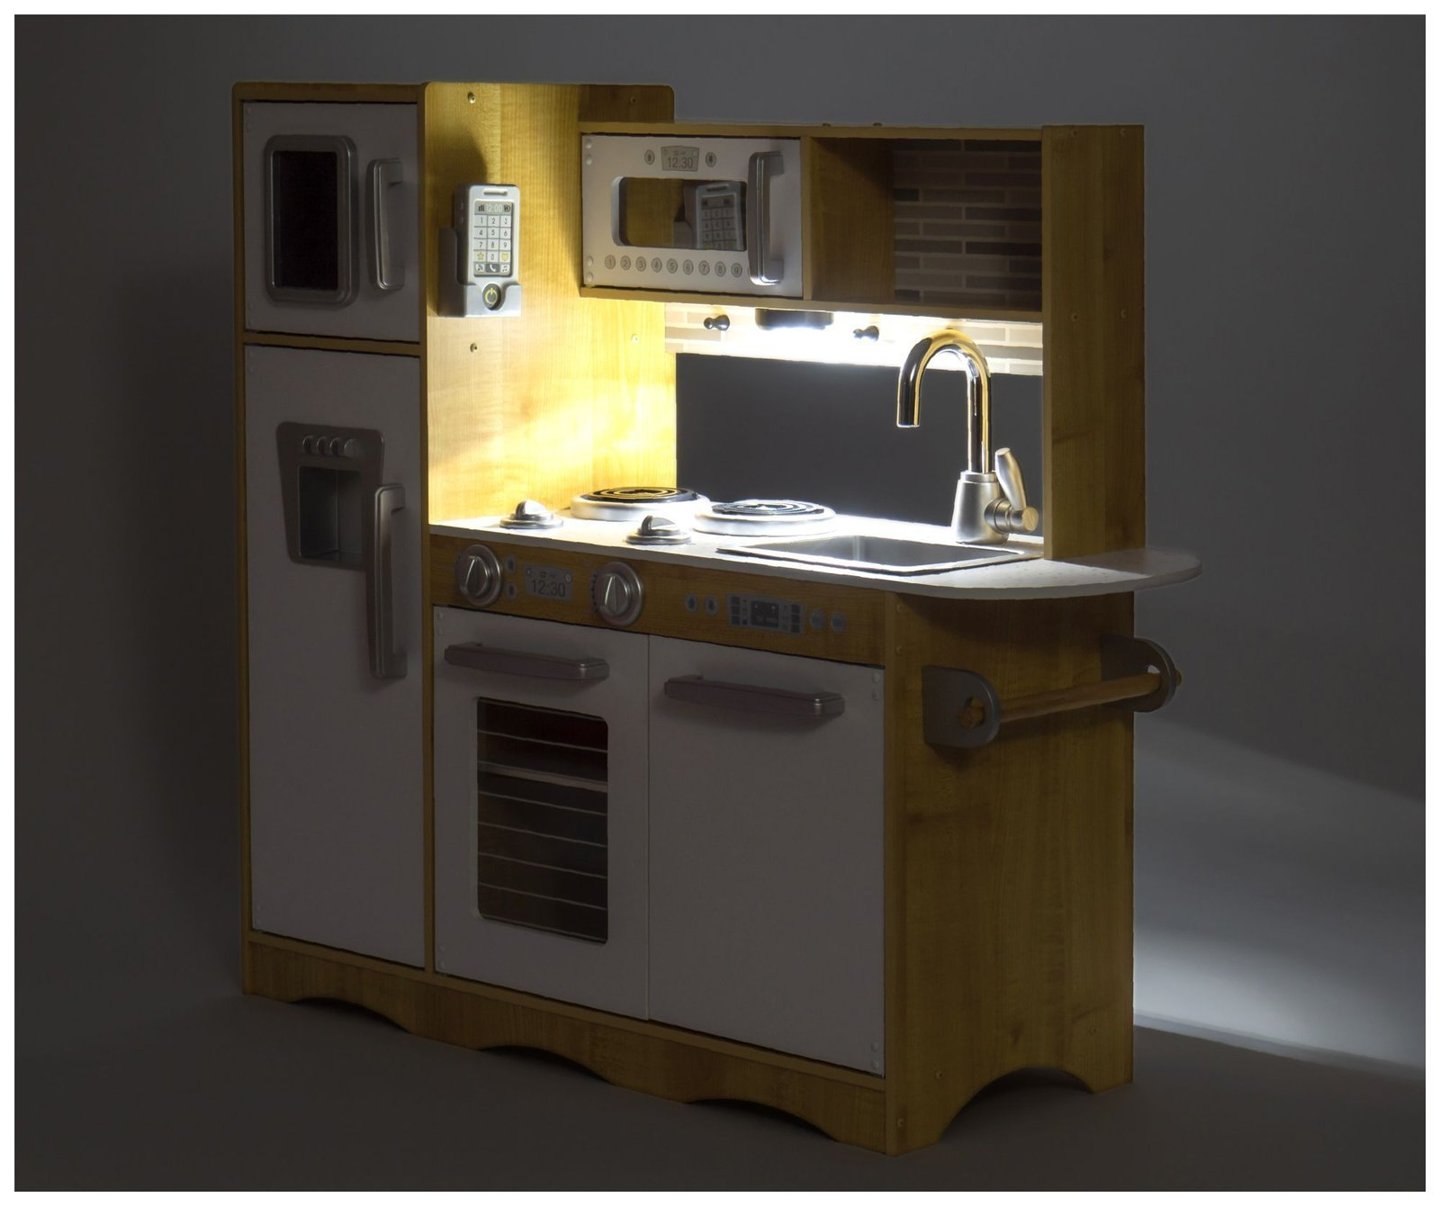 Kuchnia drewniana XXL z oświetleniem LED, fartuszkiem i akcesoriami